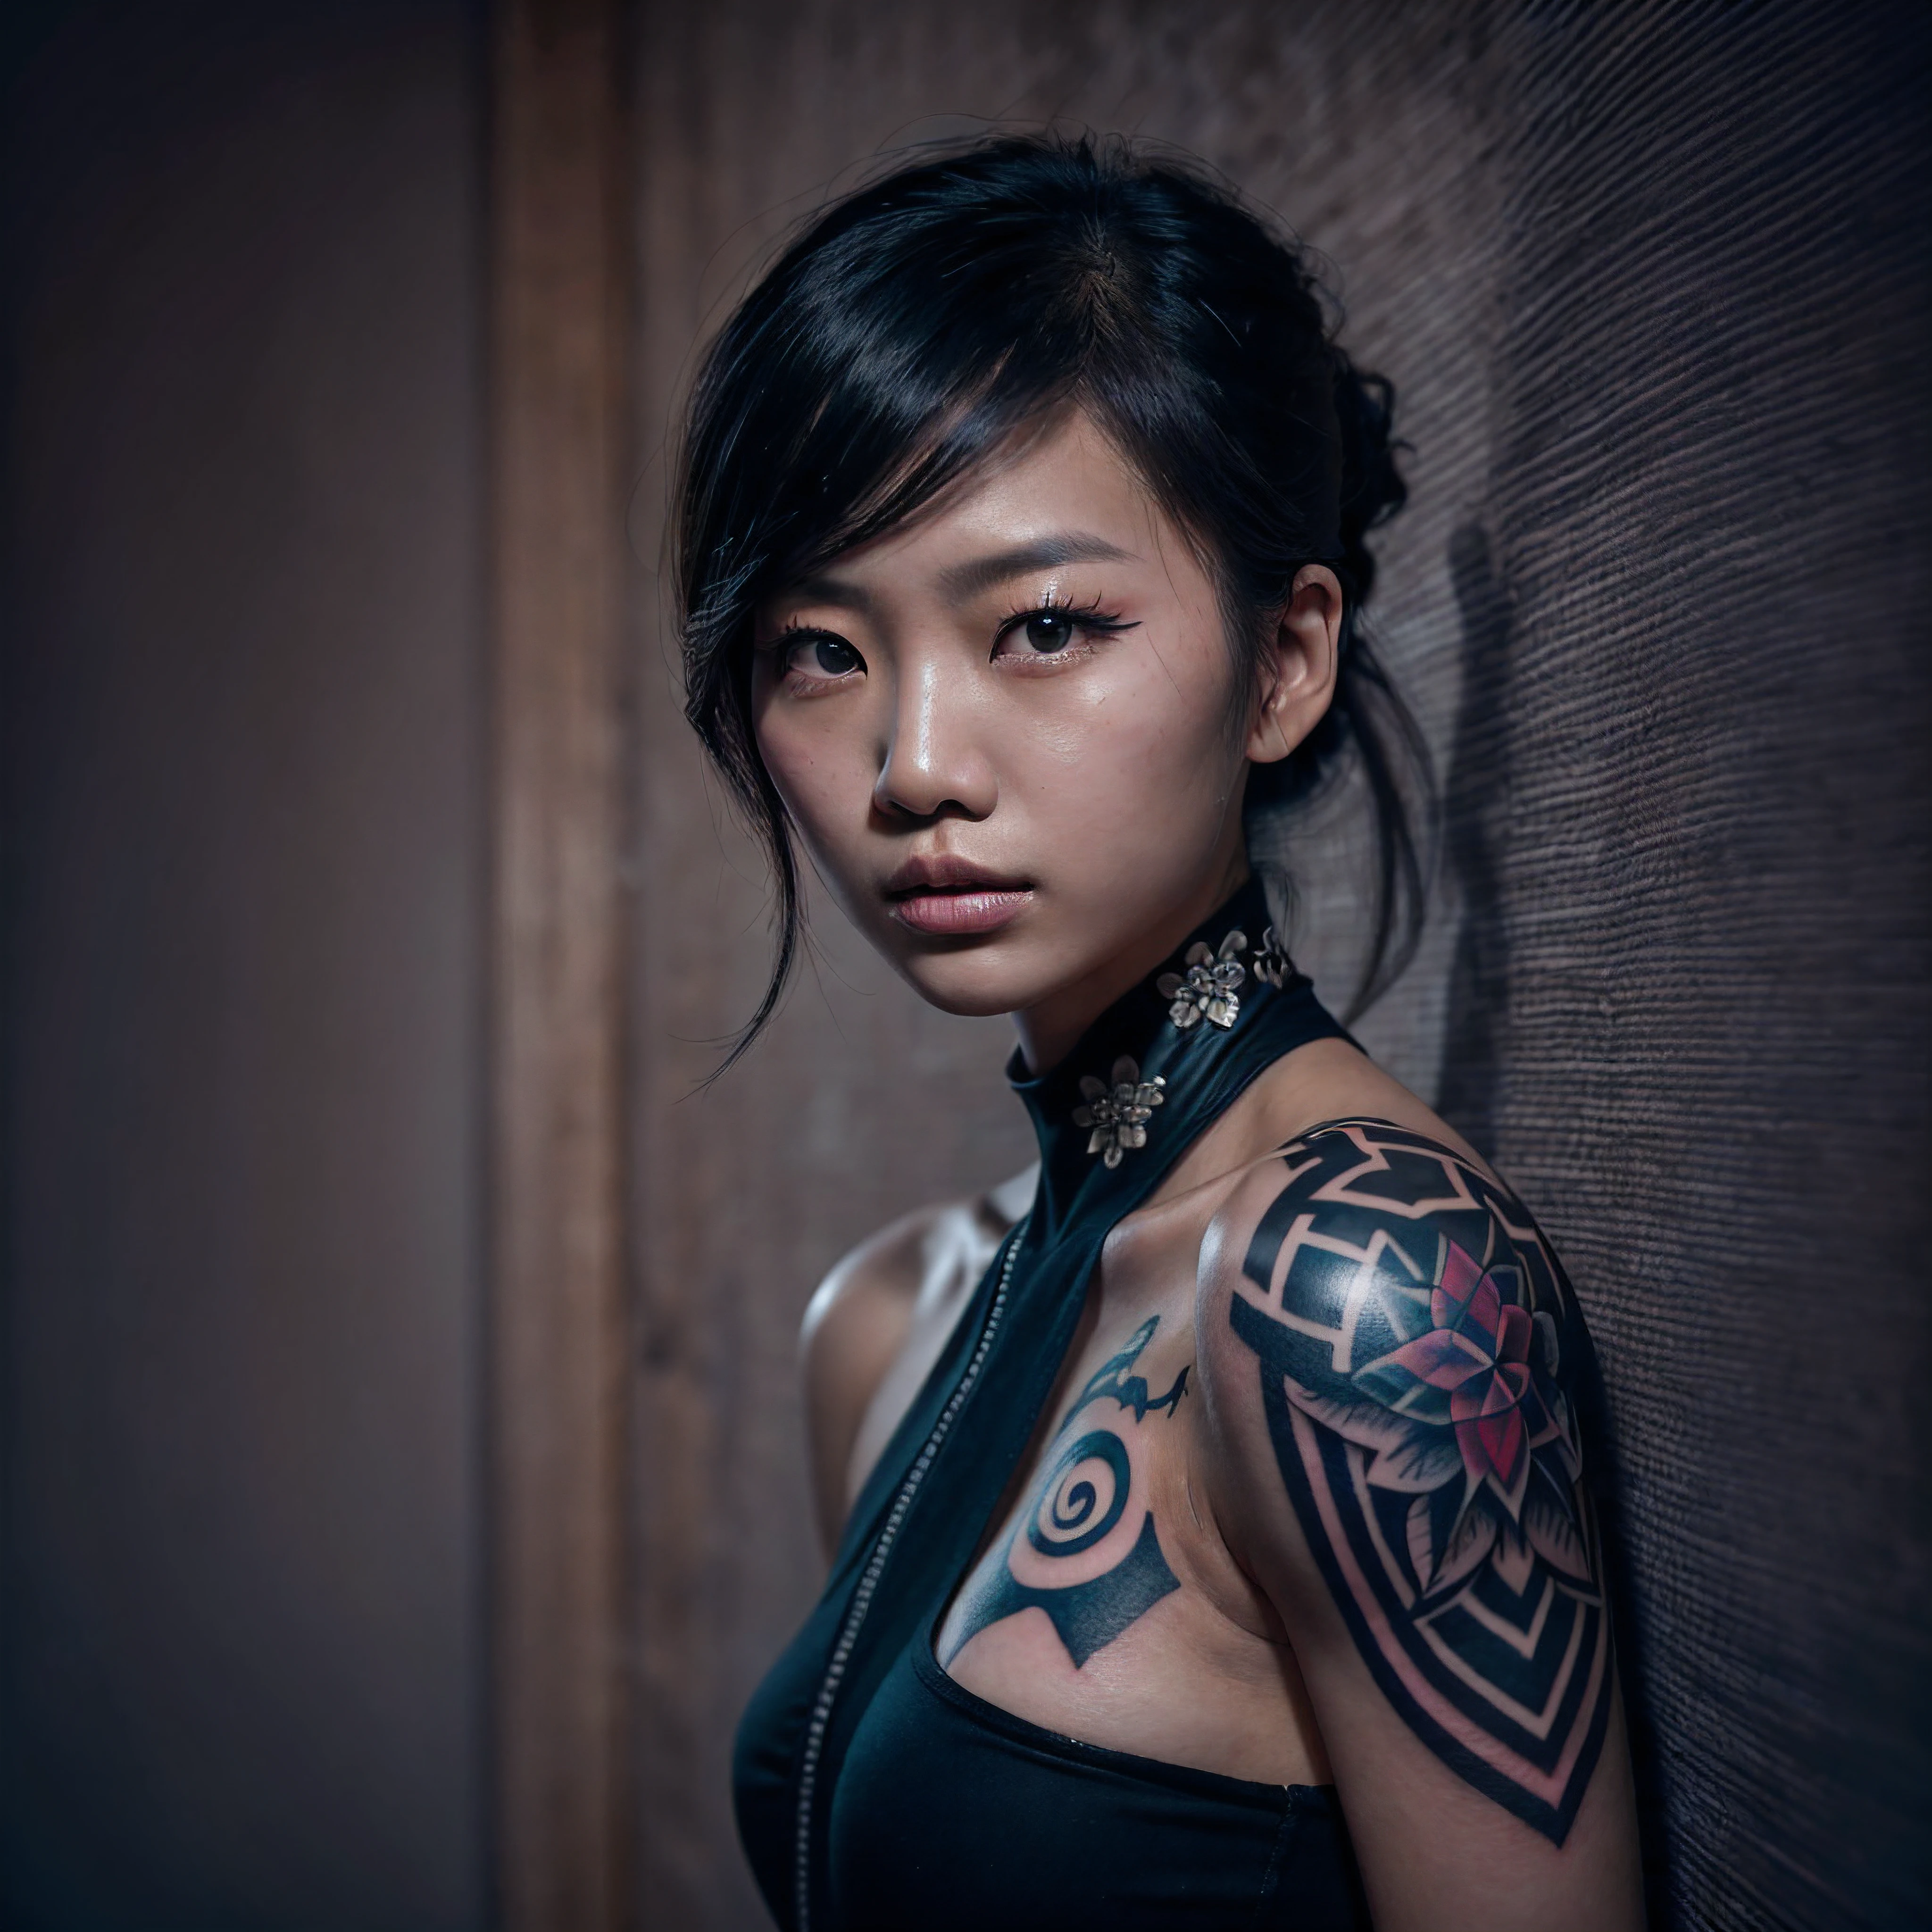 (ภาพบุคคลใกล้ชิด, องค์ประกอบที่ซับซ้อน:1.3), (ดวงตาที่ละเอียดและแสดงออก:1.6), (สไตล์แห่งอนาคต), (An ภาพบุคคลใกล้ชิด of an Asian woman showing her entire body covered with black geometric tattoos:1.3), (ปิดปาก:1.2), (การแสดงออกที่แท้จริงในสายตาของเธอ: 1.2), แต่งตาแบบควันสีเข้ม, ภาพถ่ายที่ถ่ายด้วยความละเอียด 8k อันน่าทึ่งและรูปแบบ Raw เพื่อรักษารายละเอียดคุณภาพสูงสุด. เธอสวมเสื้อผ้าแห่งอนาคตที่หรูหรา, (ไหล่เปลือย, หน้าอกเล็กปกคลุม:1.3), (ดวงตาของเธอถ่ายทอดออกมาด้วยความใส่ใจในรายละเอียดอย่างพิถีพิถัน: 1.3), ภาพนี้ถ่ายด้วยเลนส์ที่เน้นความลึกในดวงตาของเธอ, (ลมพัดมารอบตัวเธอ), และฉากหลังเป็นฉากสตูดิโอสีเข้มที่ช่วยเสริมสีสันของฉาก. แสงและเงาได้รับการออกแบบอย่างเชี่ยวชาญเพื่อดึงสีผิวและบรรยากาศที่เข้มข้นของเธอออกมา. ทรงผมที่สร้างสรรค์ของเธอช่วยเพิ่มความแตกต่างให้กับผิวของเธอ, องค์ประกอบโดยรวมรวบรวมแก่นแท้ของเธอด้วยความแท้จริงและความสง่างาม, สร้างภาพที่เฉลิมฉลองมรดกและความงามของเธอ. การถ่ายภาพโดยใช้เทคนิคแสงและเงาที่ดีที่สุด, เพื่อสร้างภาพที่ชวนให้หลงใหลซึ่งอยู่เหนือการมองเห็น, เอียงศีรษะเล็กน้อย,